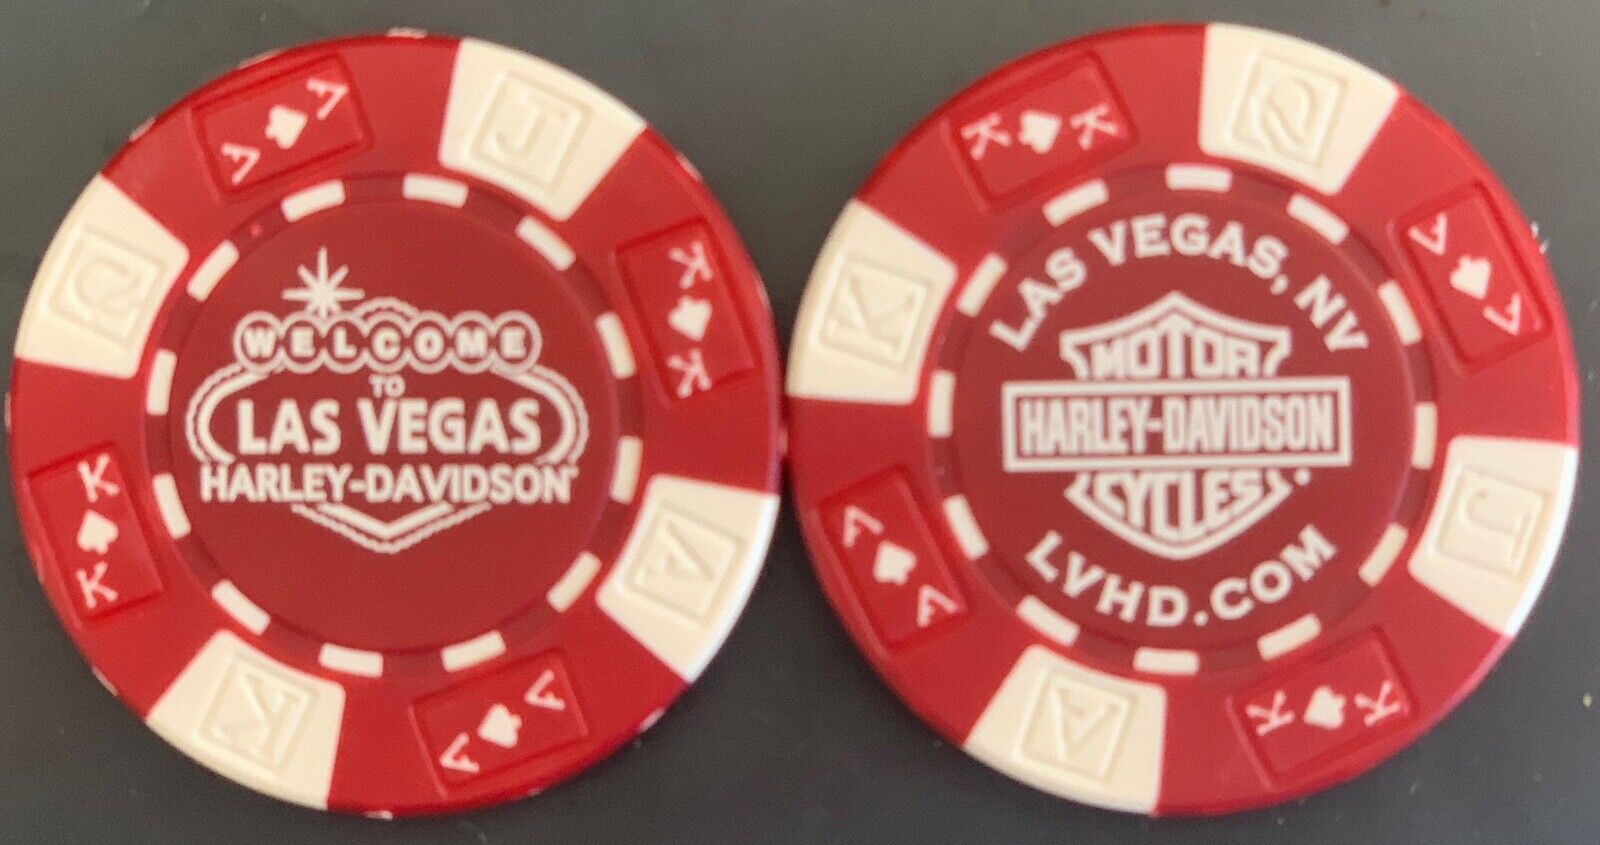 Las Vegas Harley-Davidson® in Las Vegas, NV Collectible Poker Chip Red/White